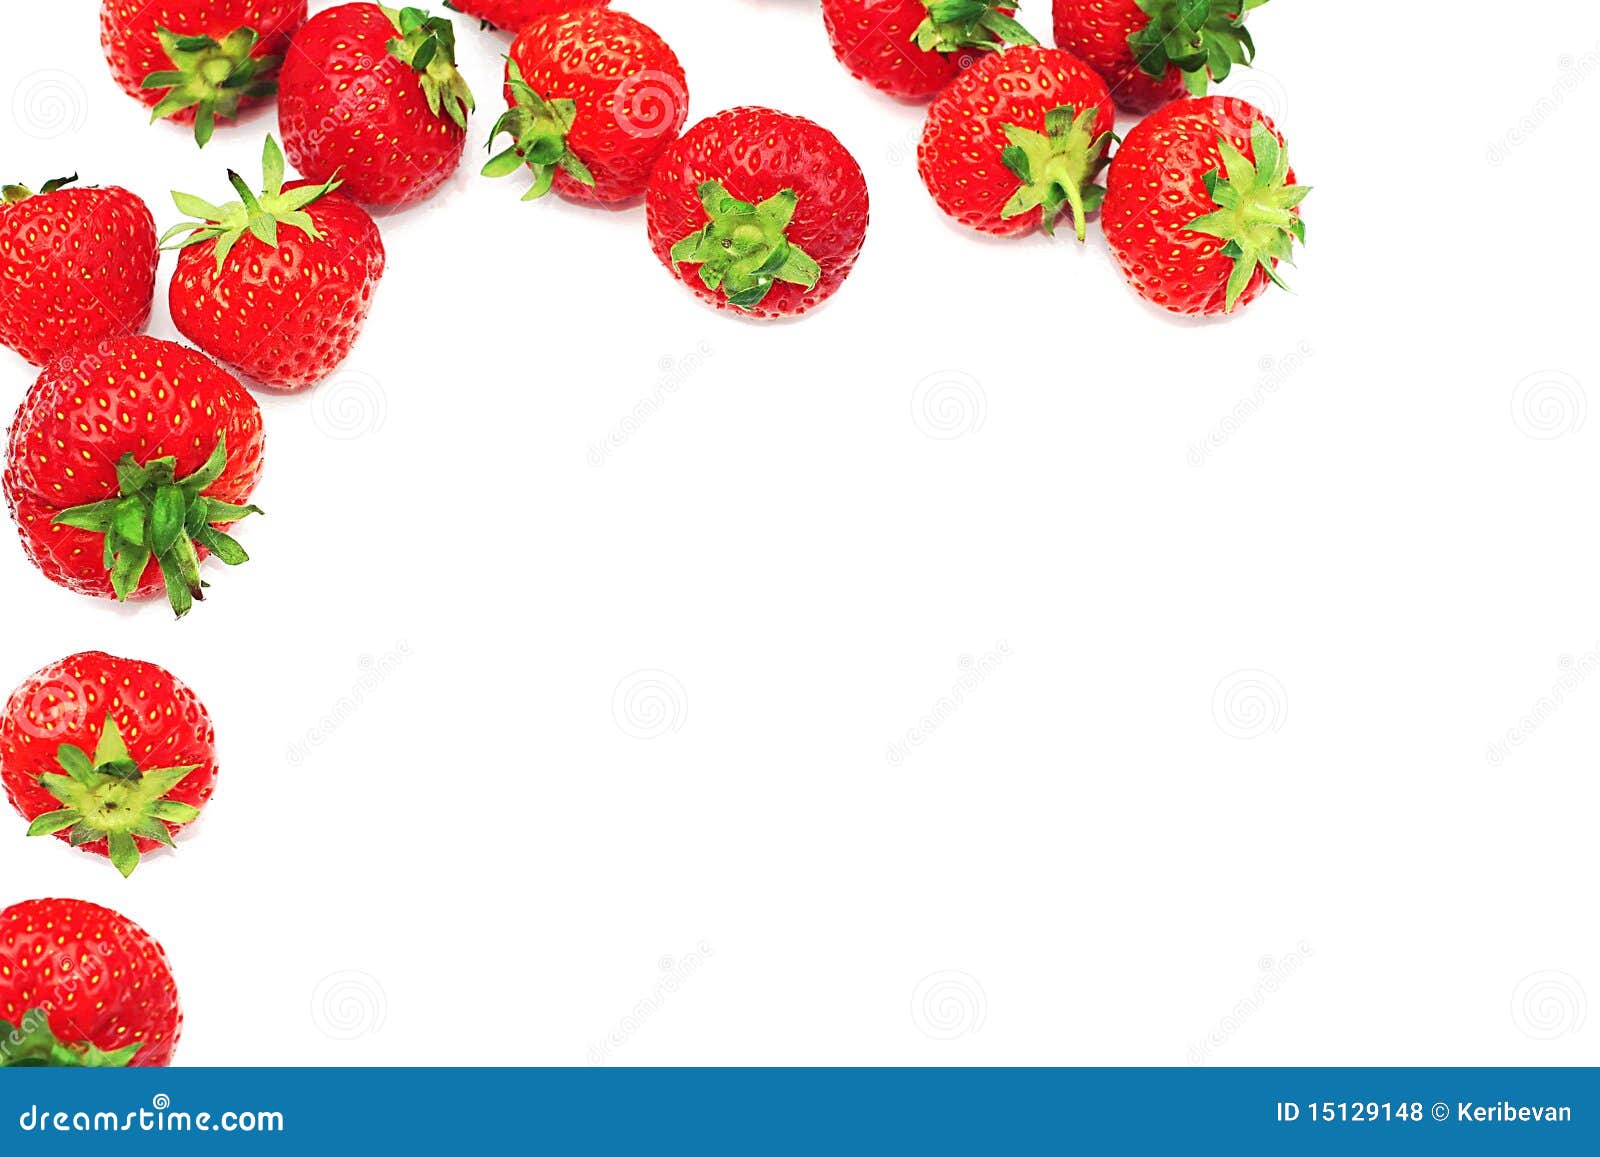 毗邻草莓. 删去您边界明亮的复制查出的红色草莓的白色